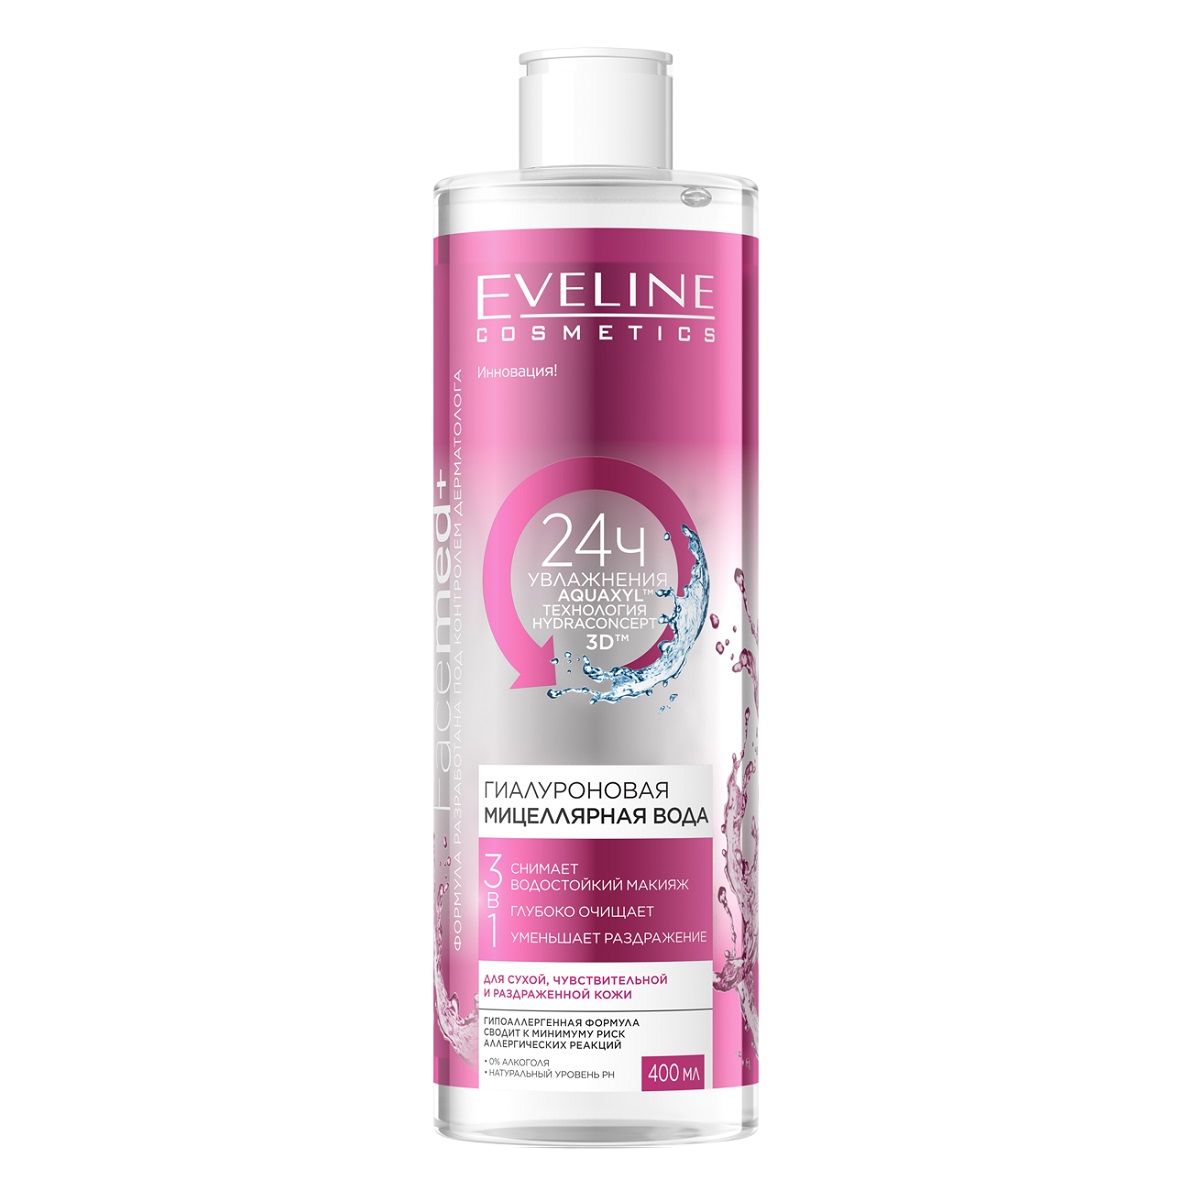 цена Eveline Cosmetics Гиалуроновая мицеллярная вода 3 в 1, 400 мл (Eveline Cosmetics, Facemed+)